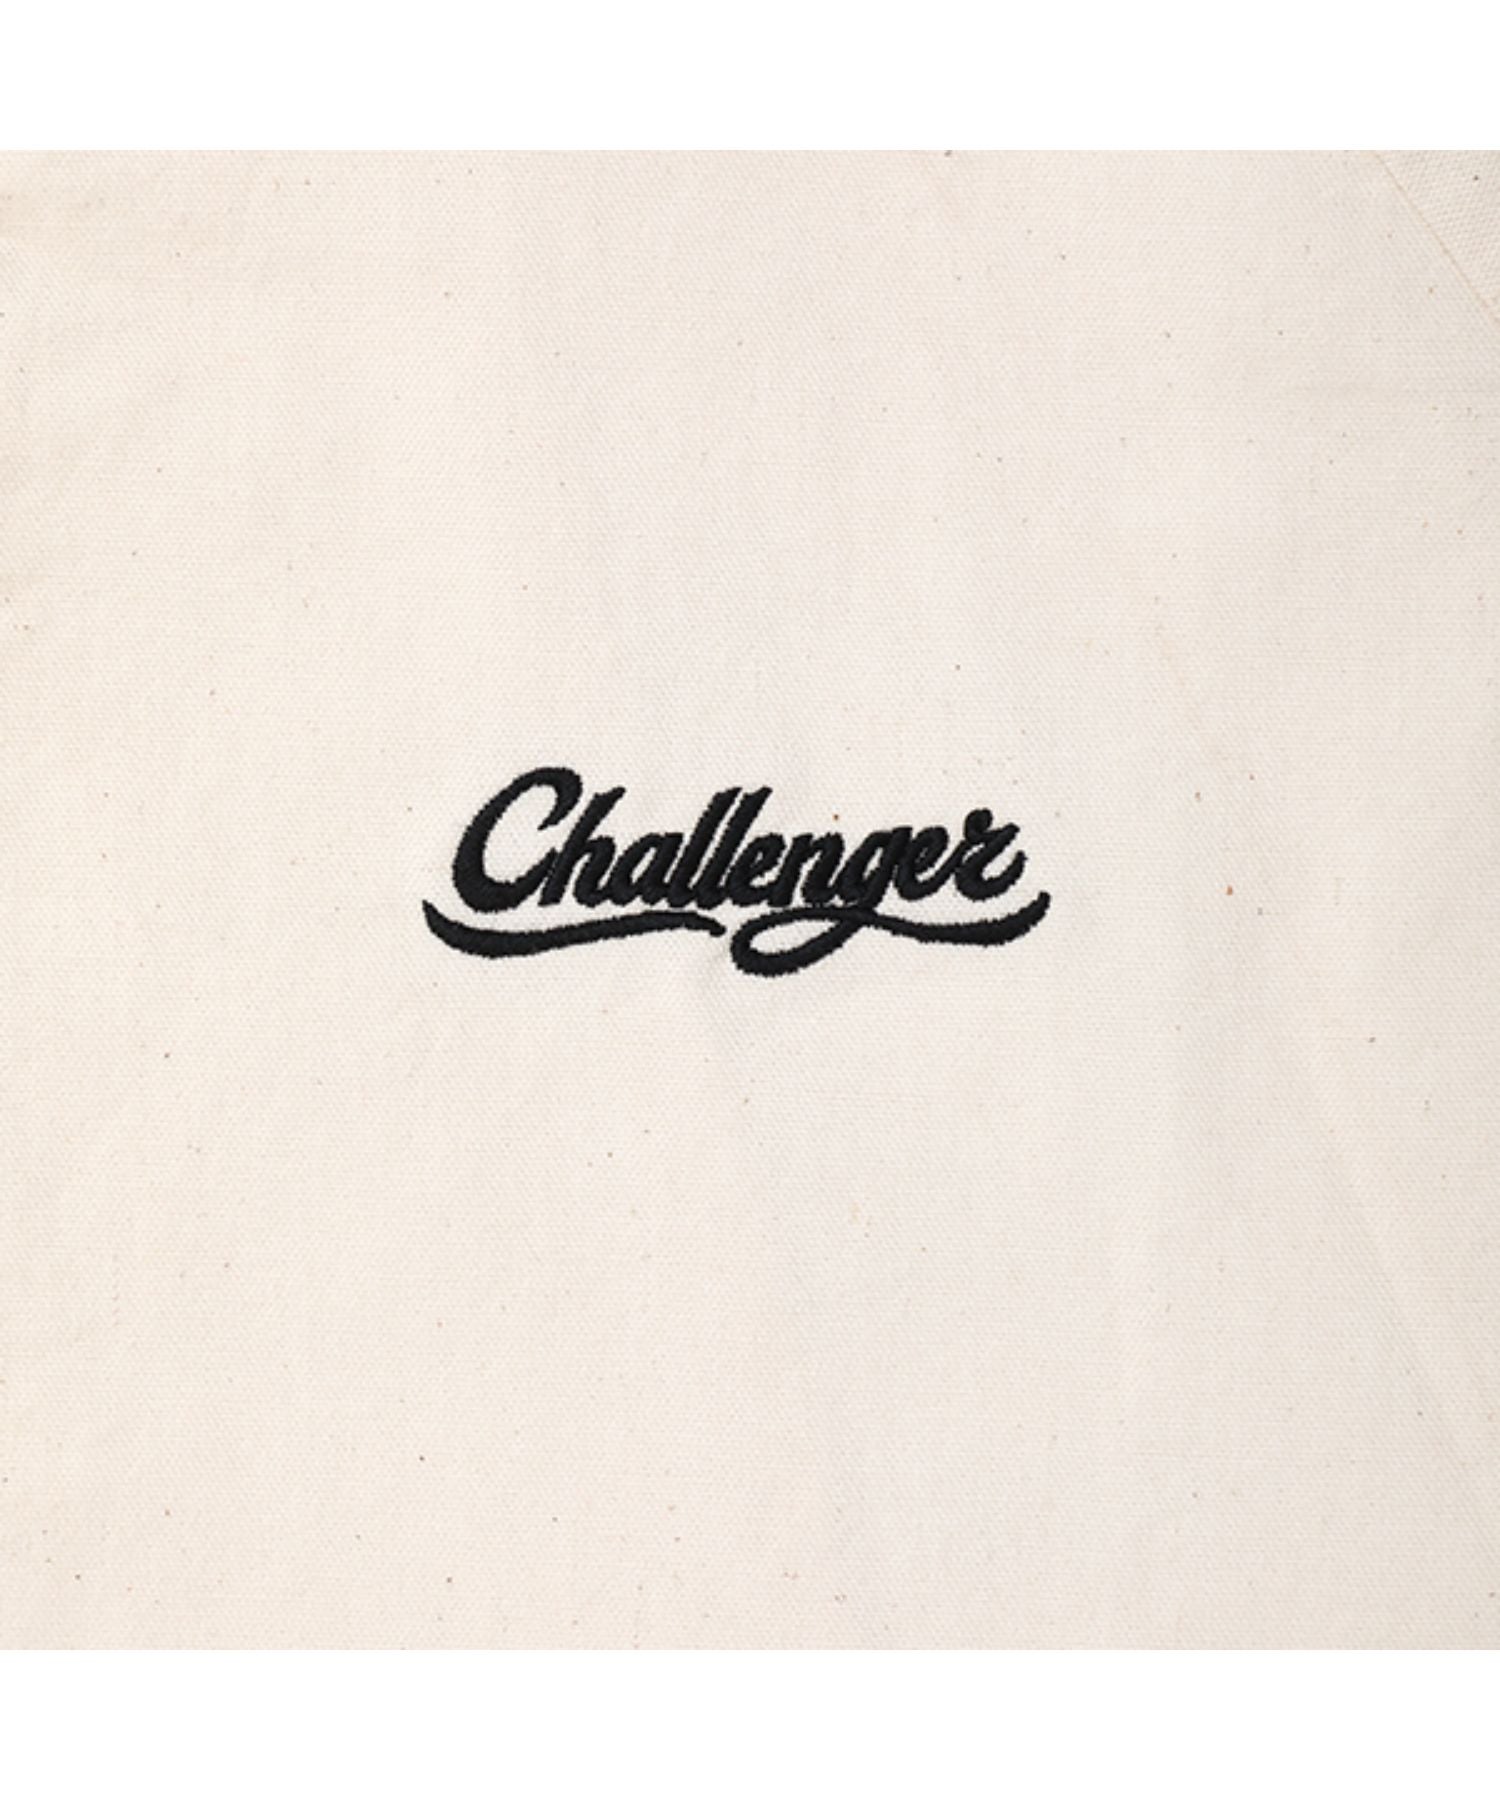 SCRIPT LOGO SWINGTOP - CHALLENGER (チャレンジャー) - outer ...